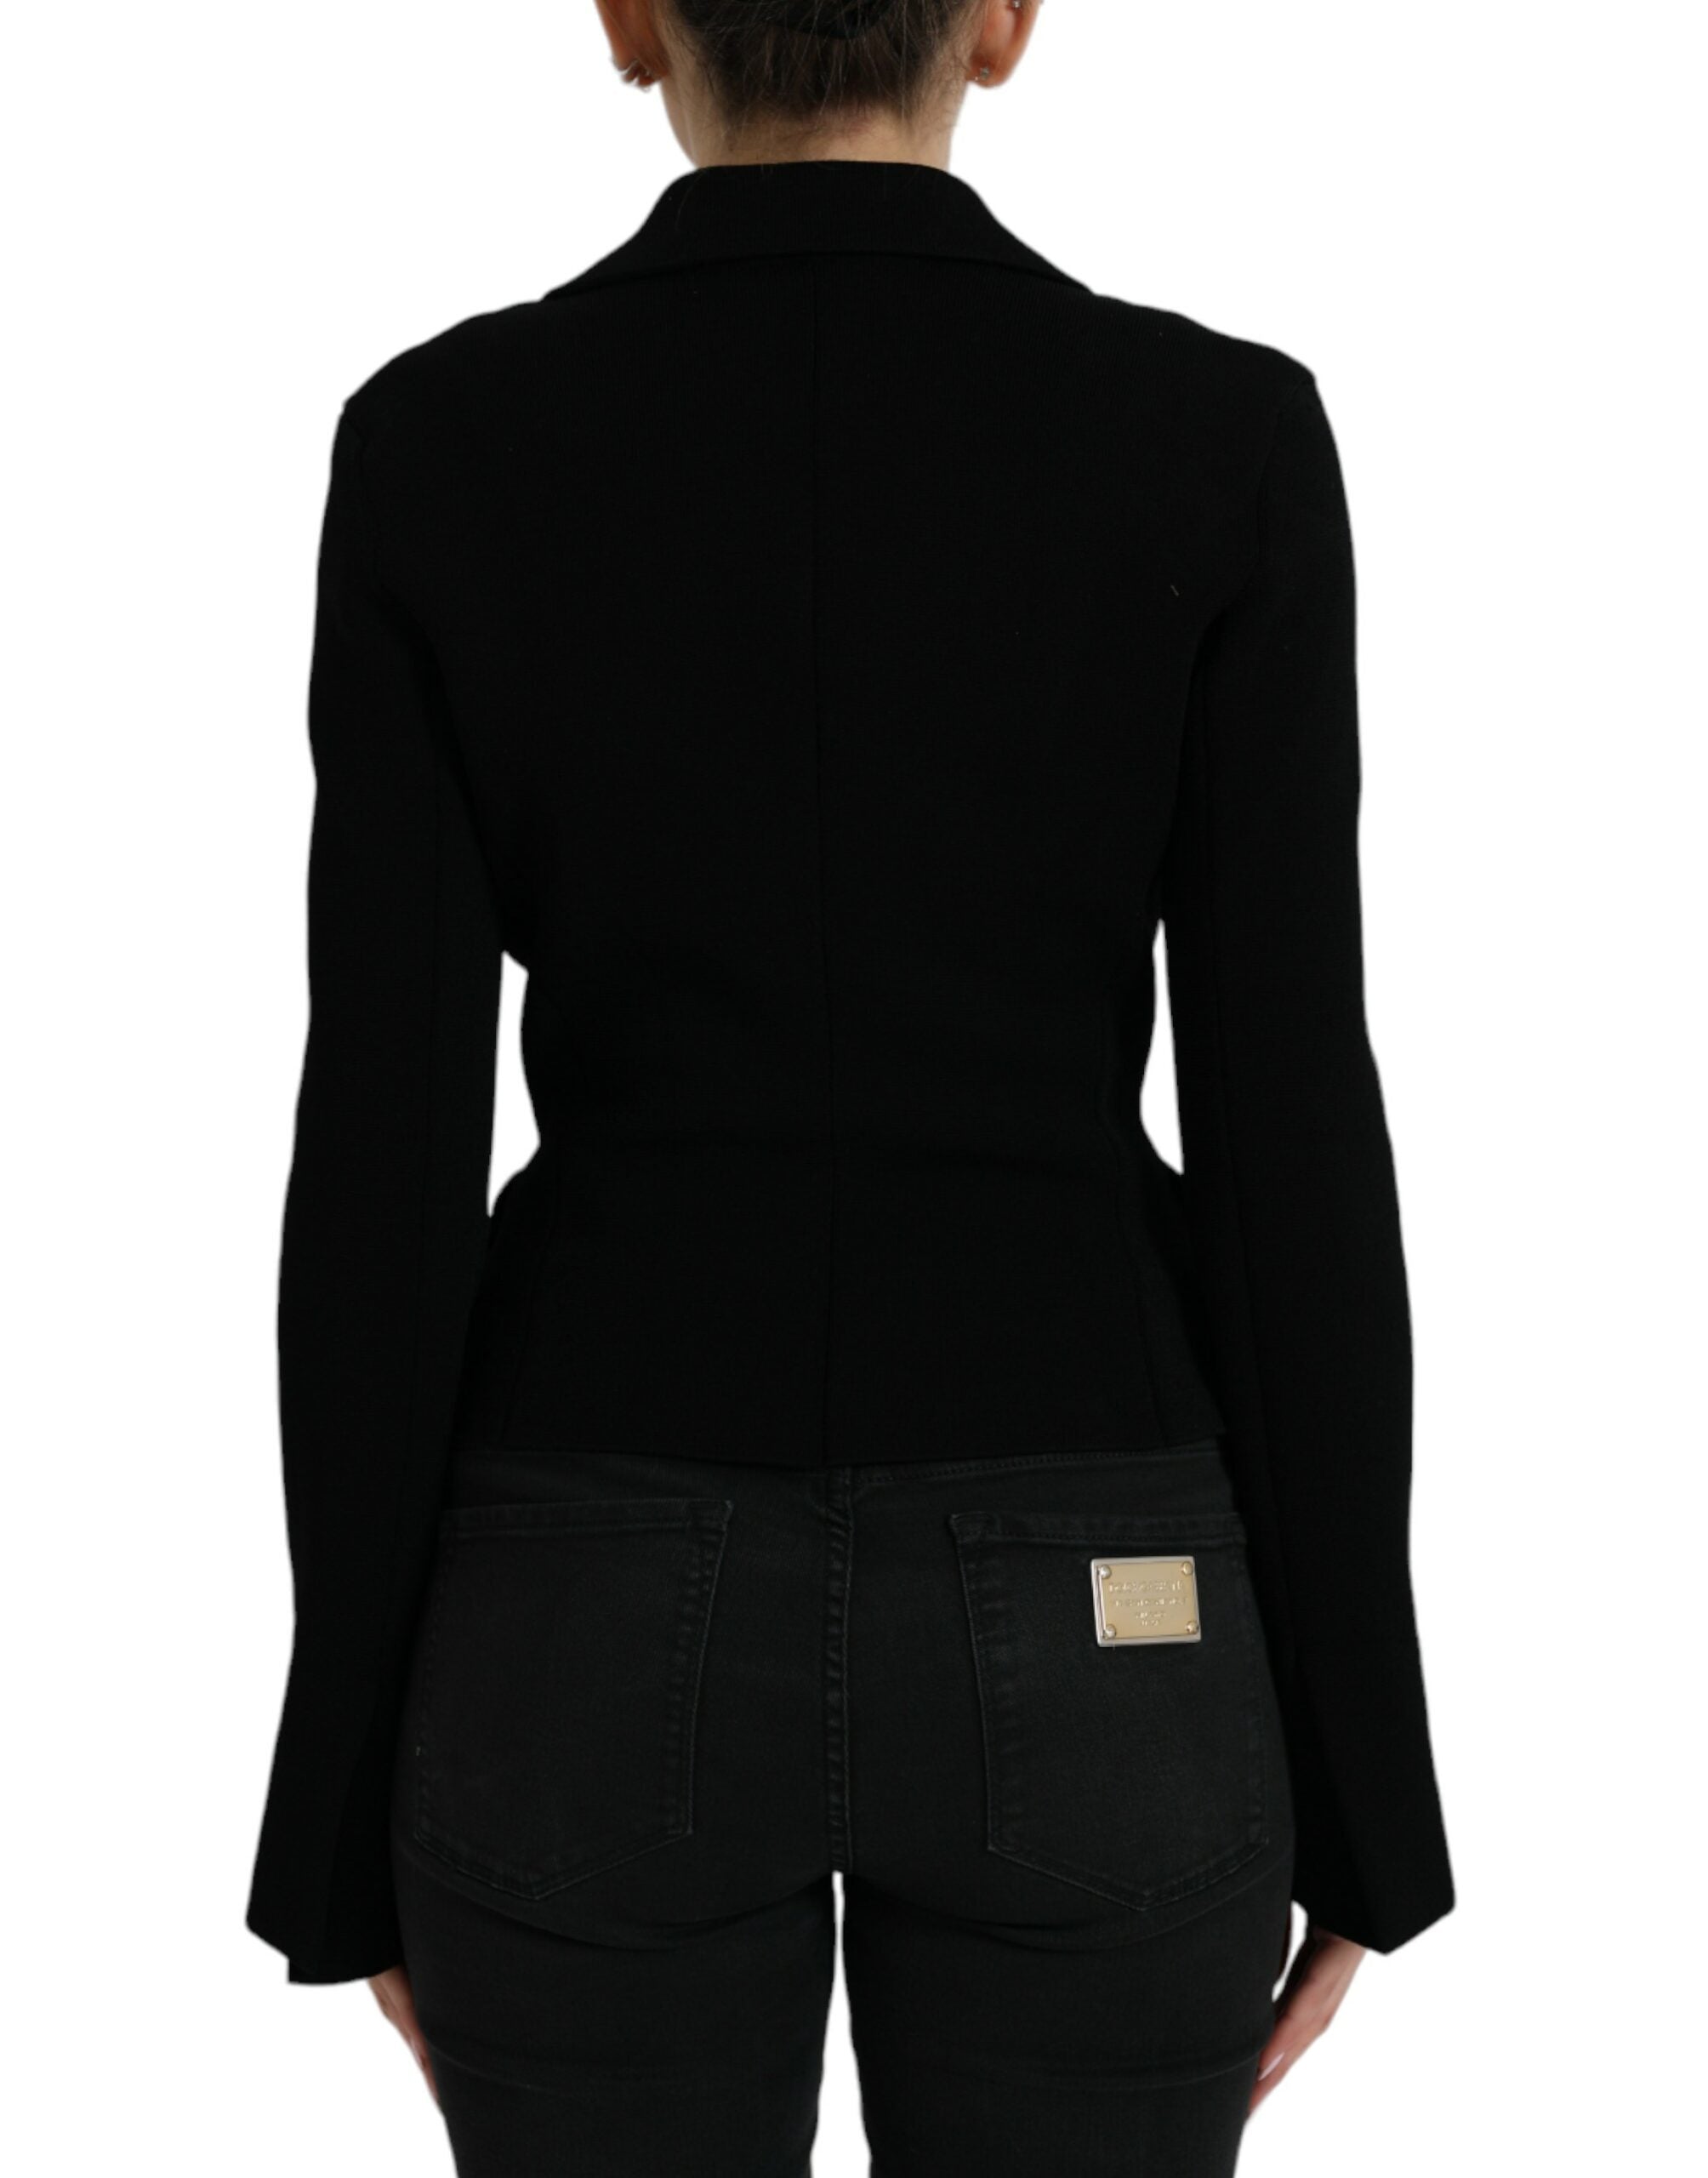 Shop Dolce & Gabbana Elegant Black Designer Blazer For Women's Women